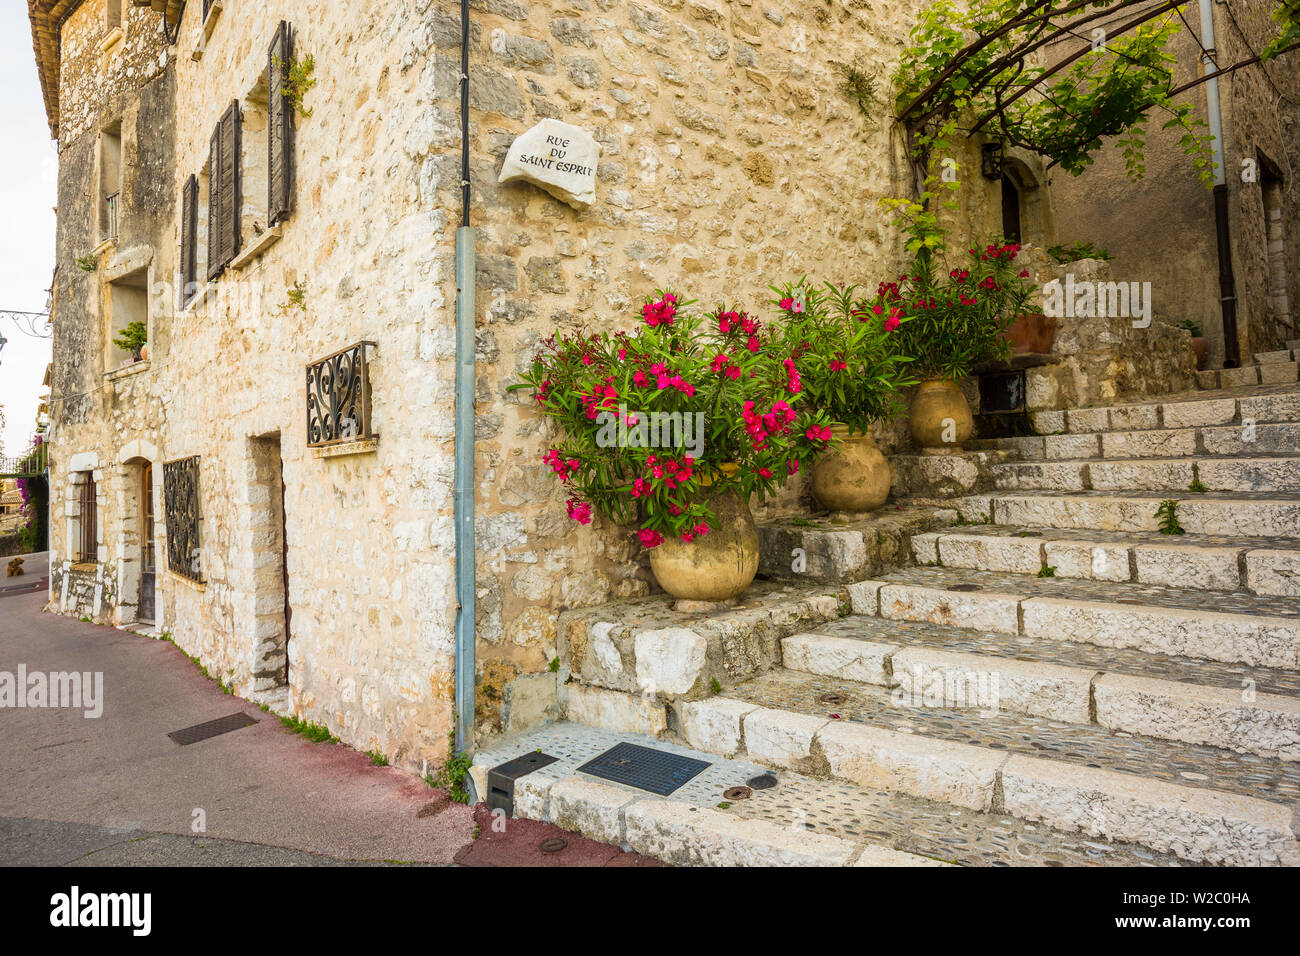 St. Paul de Vence, Alpes-Maritimes, Provence-Alpes-Cote D'Azur, French Riviera, France Stock Photo